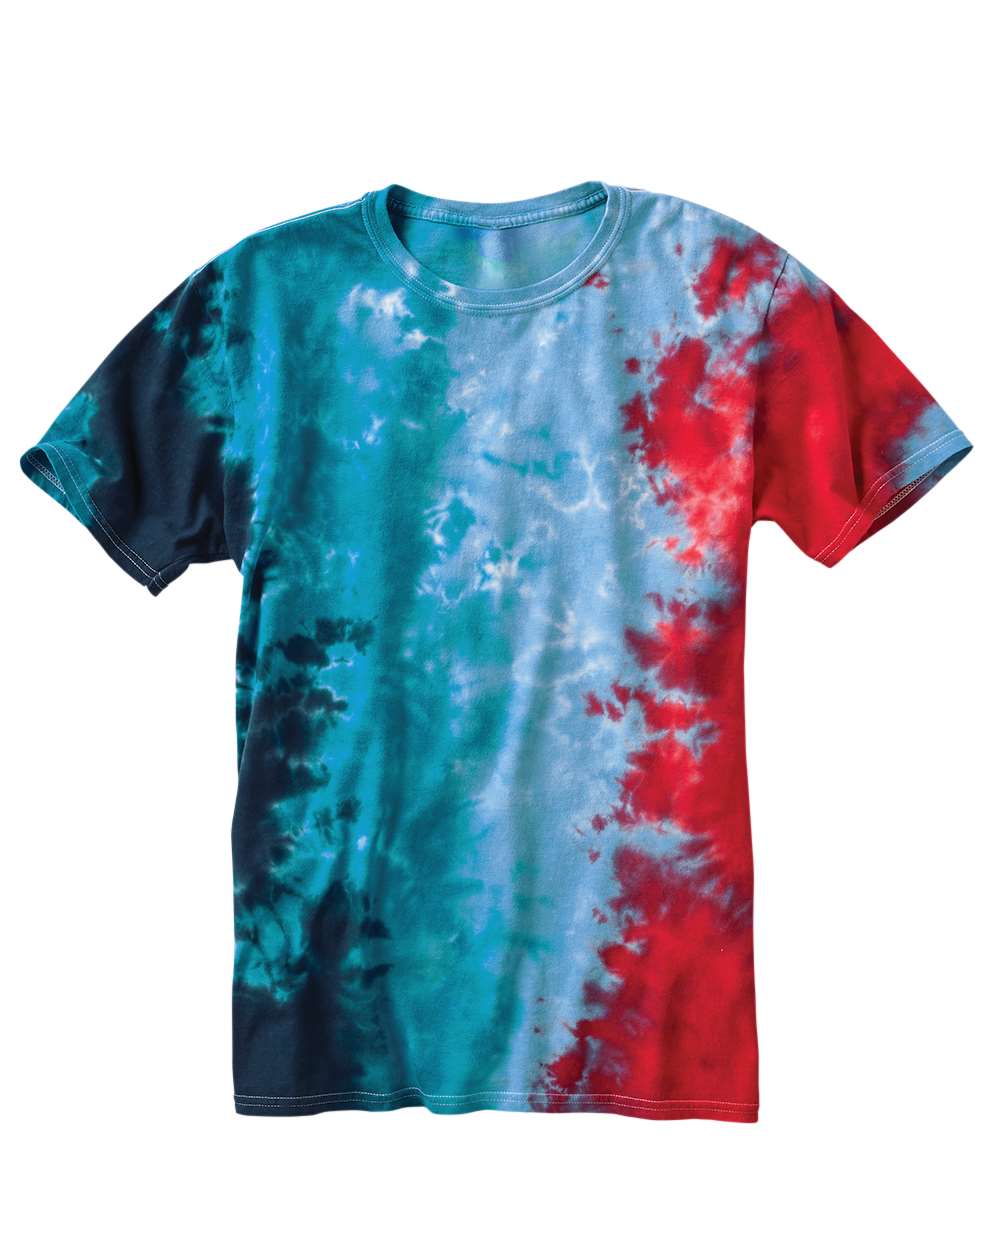 Dyenomite - Slushie Crinkle Tie Dye T-Shirt - 640VR